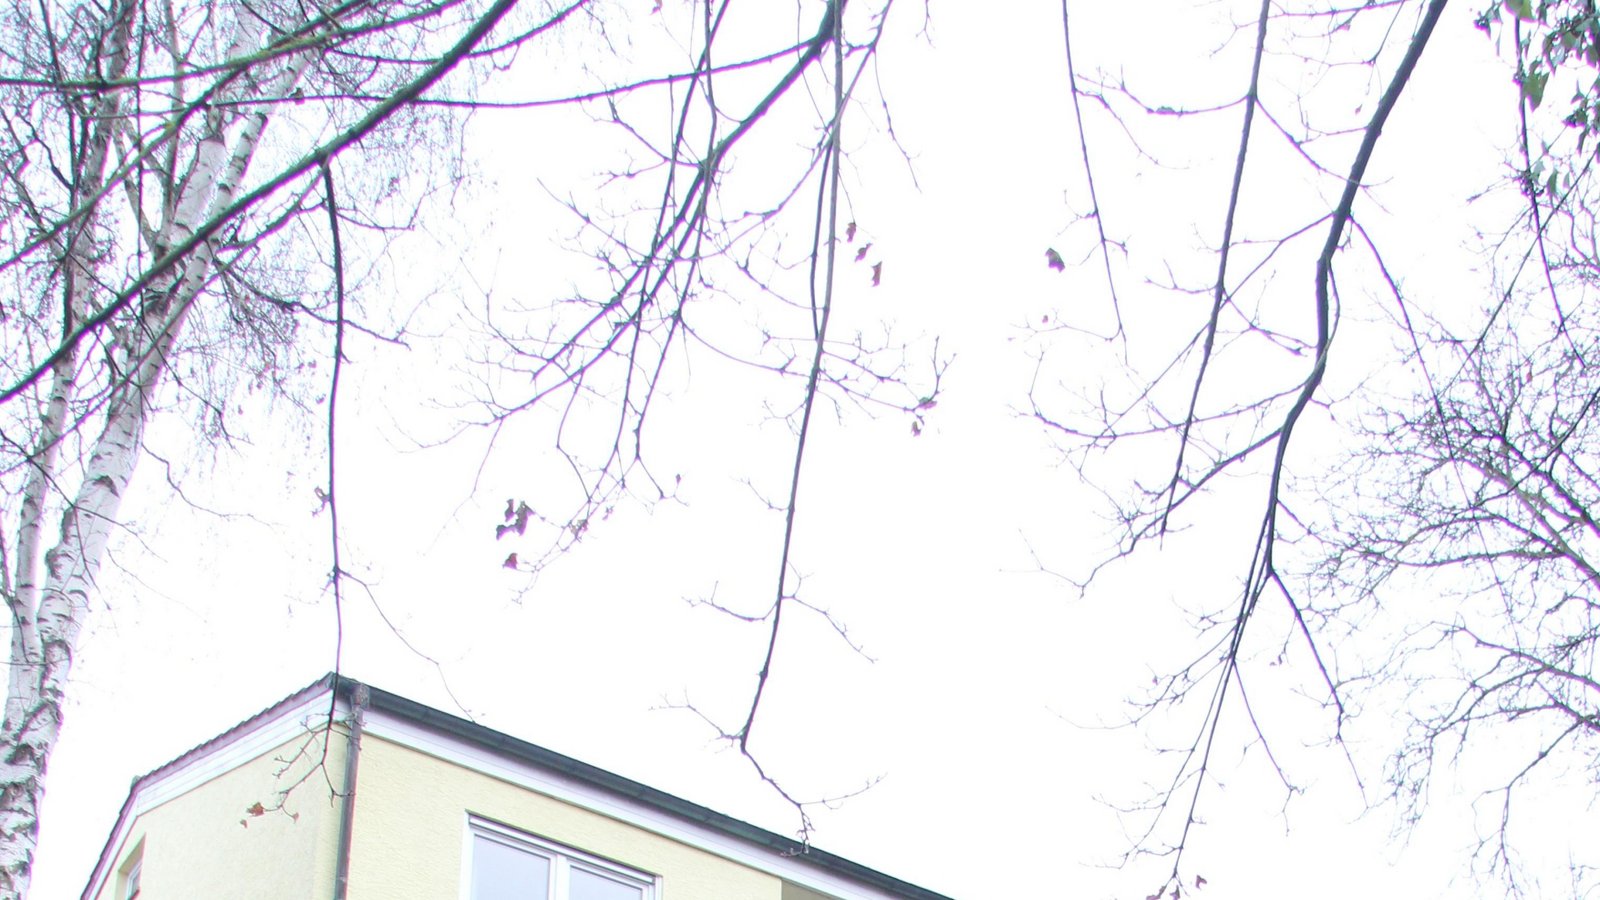 Joachim Bohlinger auf der Terrasse seines Hauses in Aurich. Hinter der Veranda fällt das Gelände steil ab und ist damit nicht bebaubar. Dass das bei der Grundsteuerberechnung keine Rolle spielt, hält Bohlinger für ungerecht. Foto: Rieger